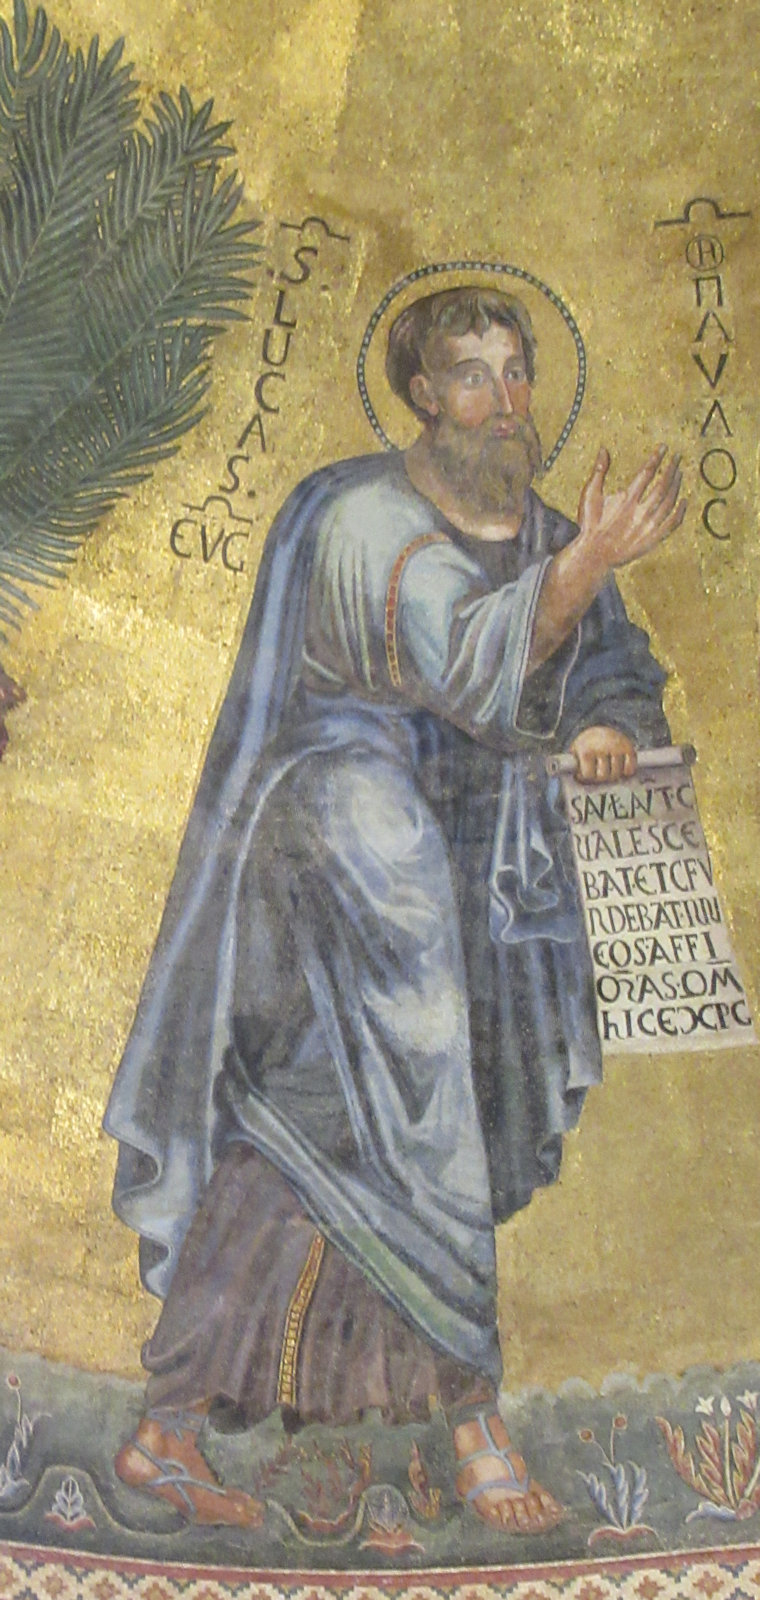 Apsismosaik, nach dem Brand von 1823 rekonstruiert entsprechend dem Mosaik von um 1220, in der Kirche San Paolo fuori le Mura in Rom